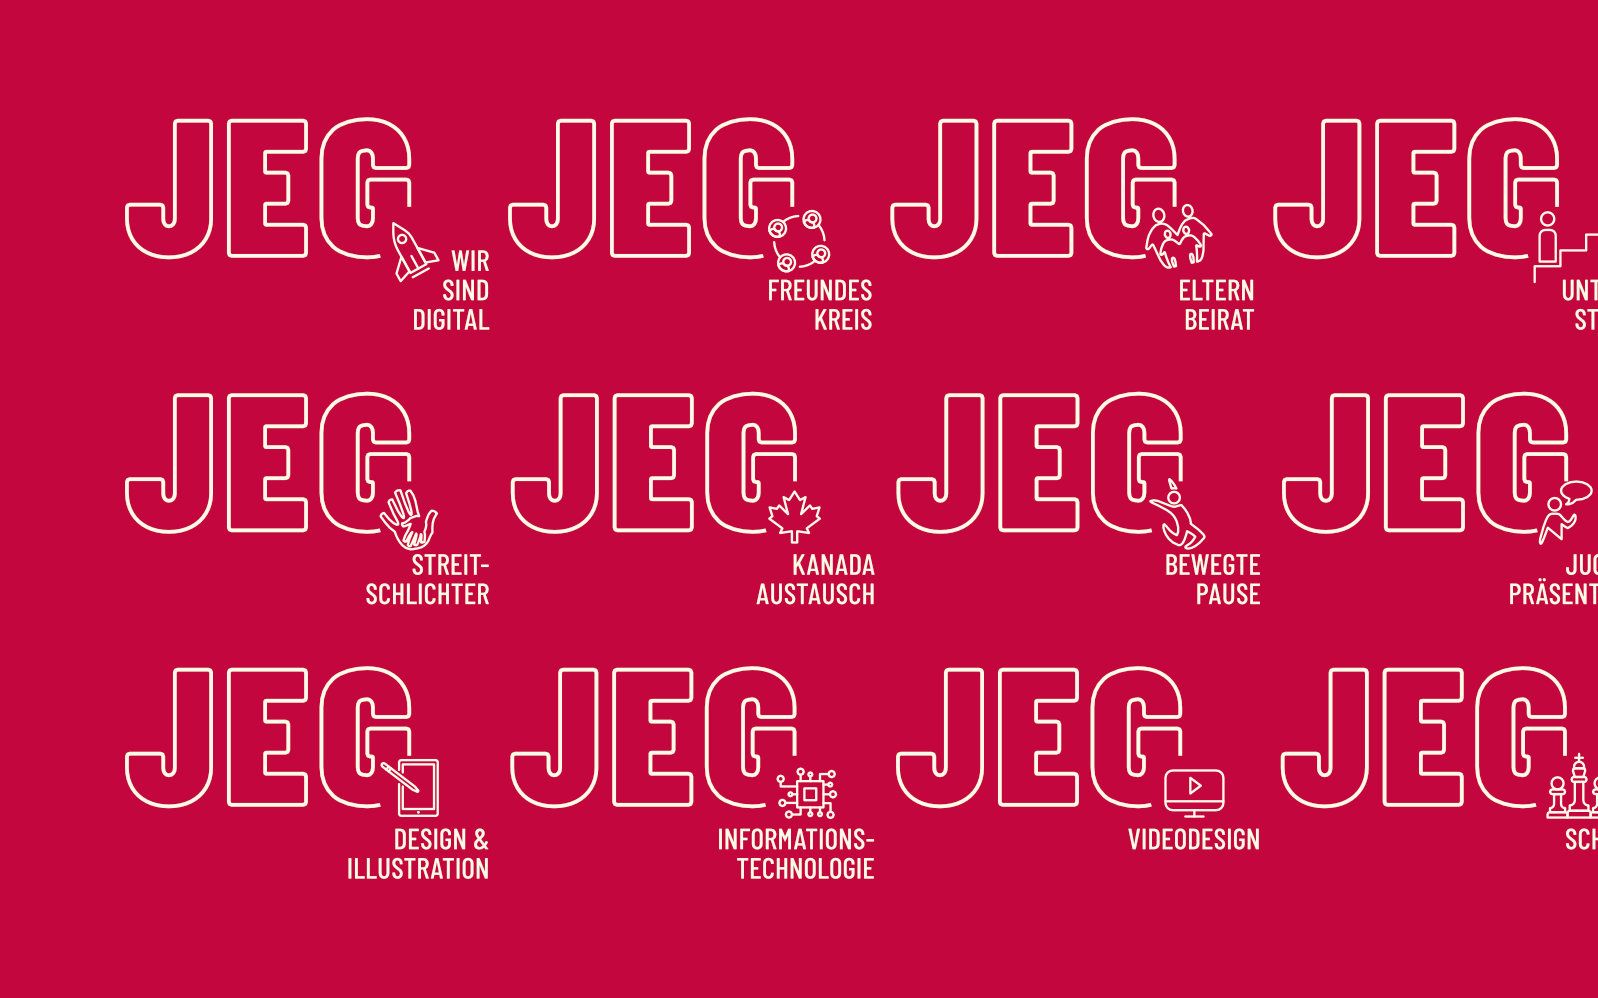 Ein Detailbild mit Auflistung verschiedener Teilbereich Logos für JEG Julius Echter Gymnasium